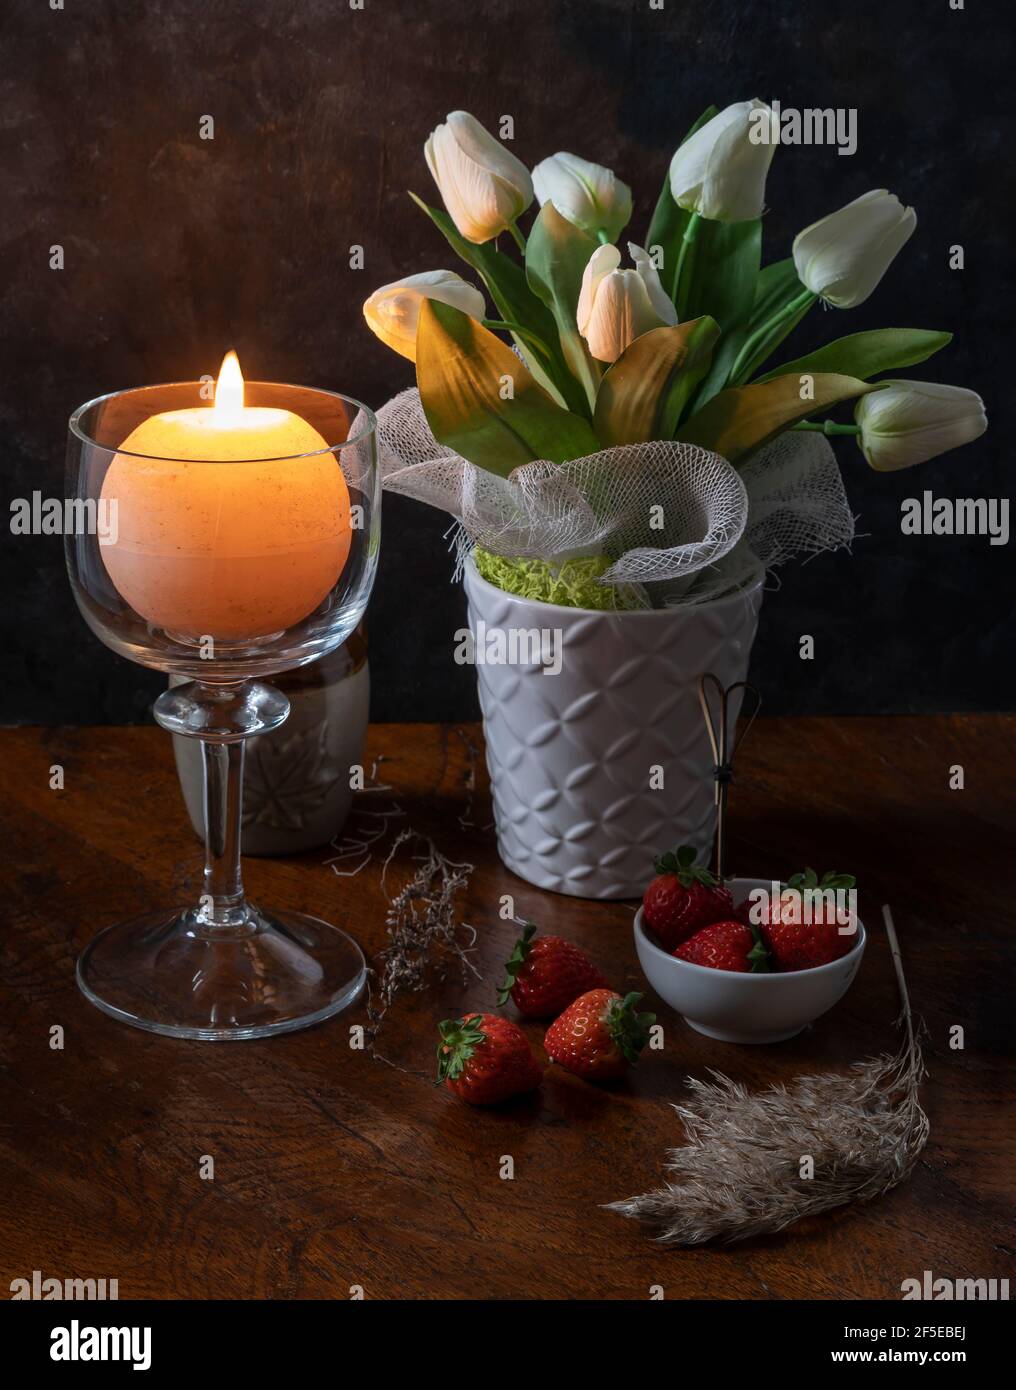 Eine runde Kerze wird in einem Kerzenhalter aus Glas angezündet In der Nähe einer Vase mit weißen Blumen auf einem Holztisch Mit einigen Erdbeeren und Trockenpflanzen Stockfoto